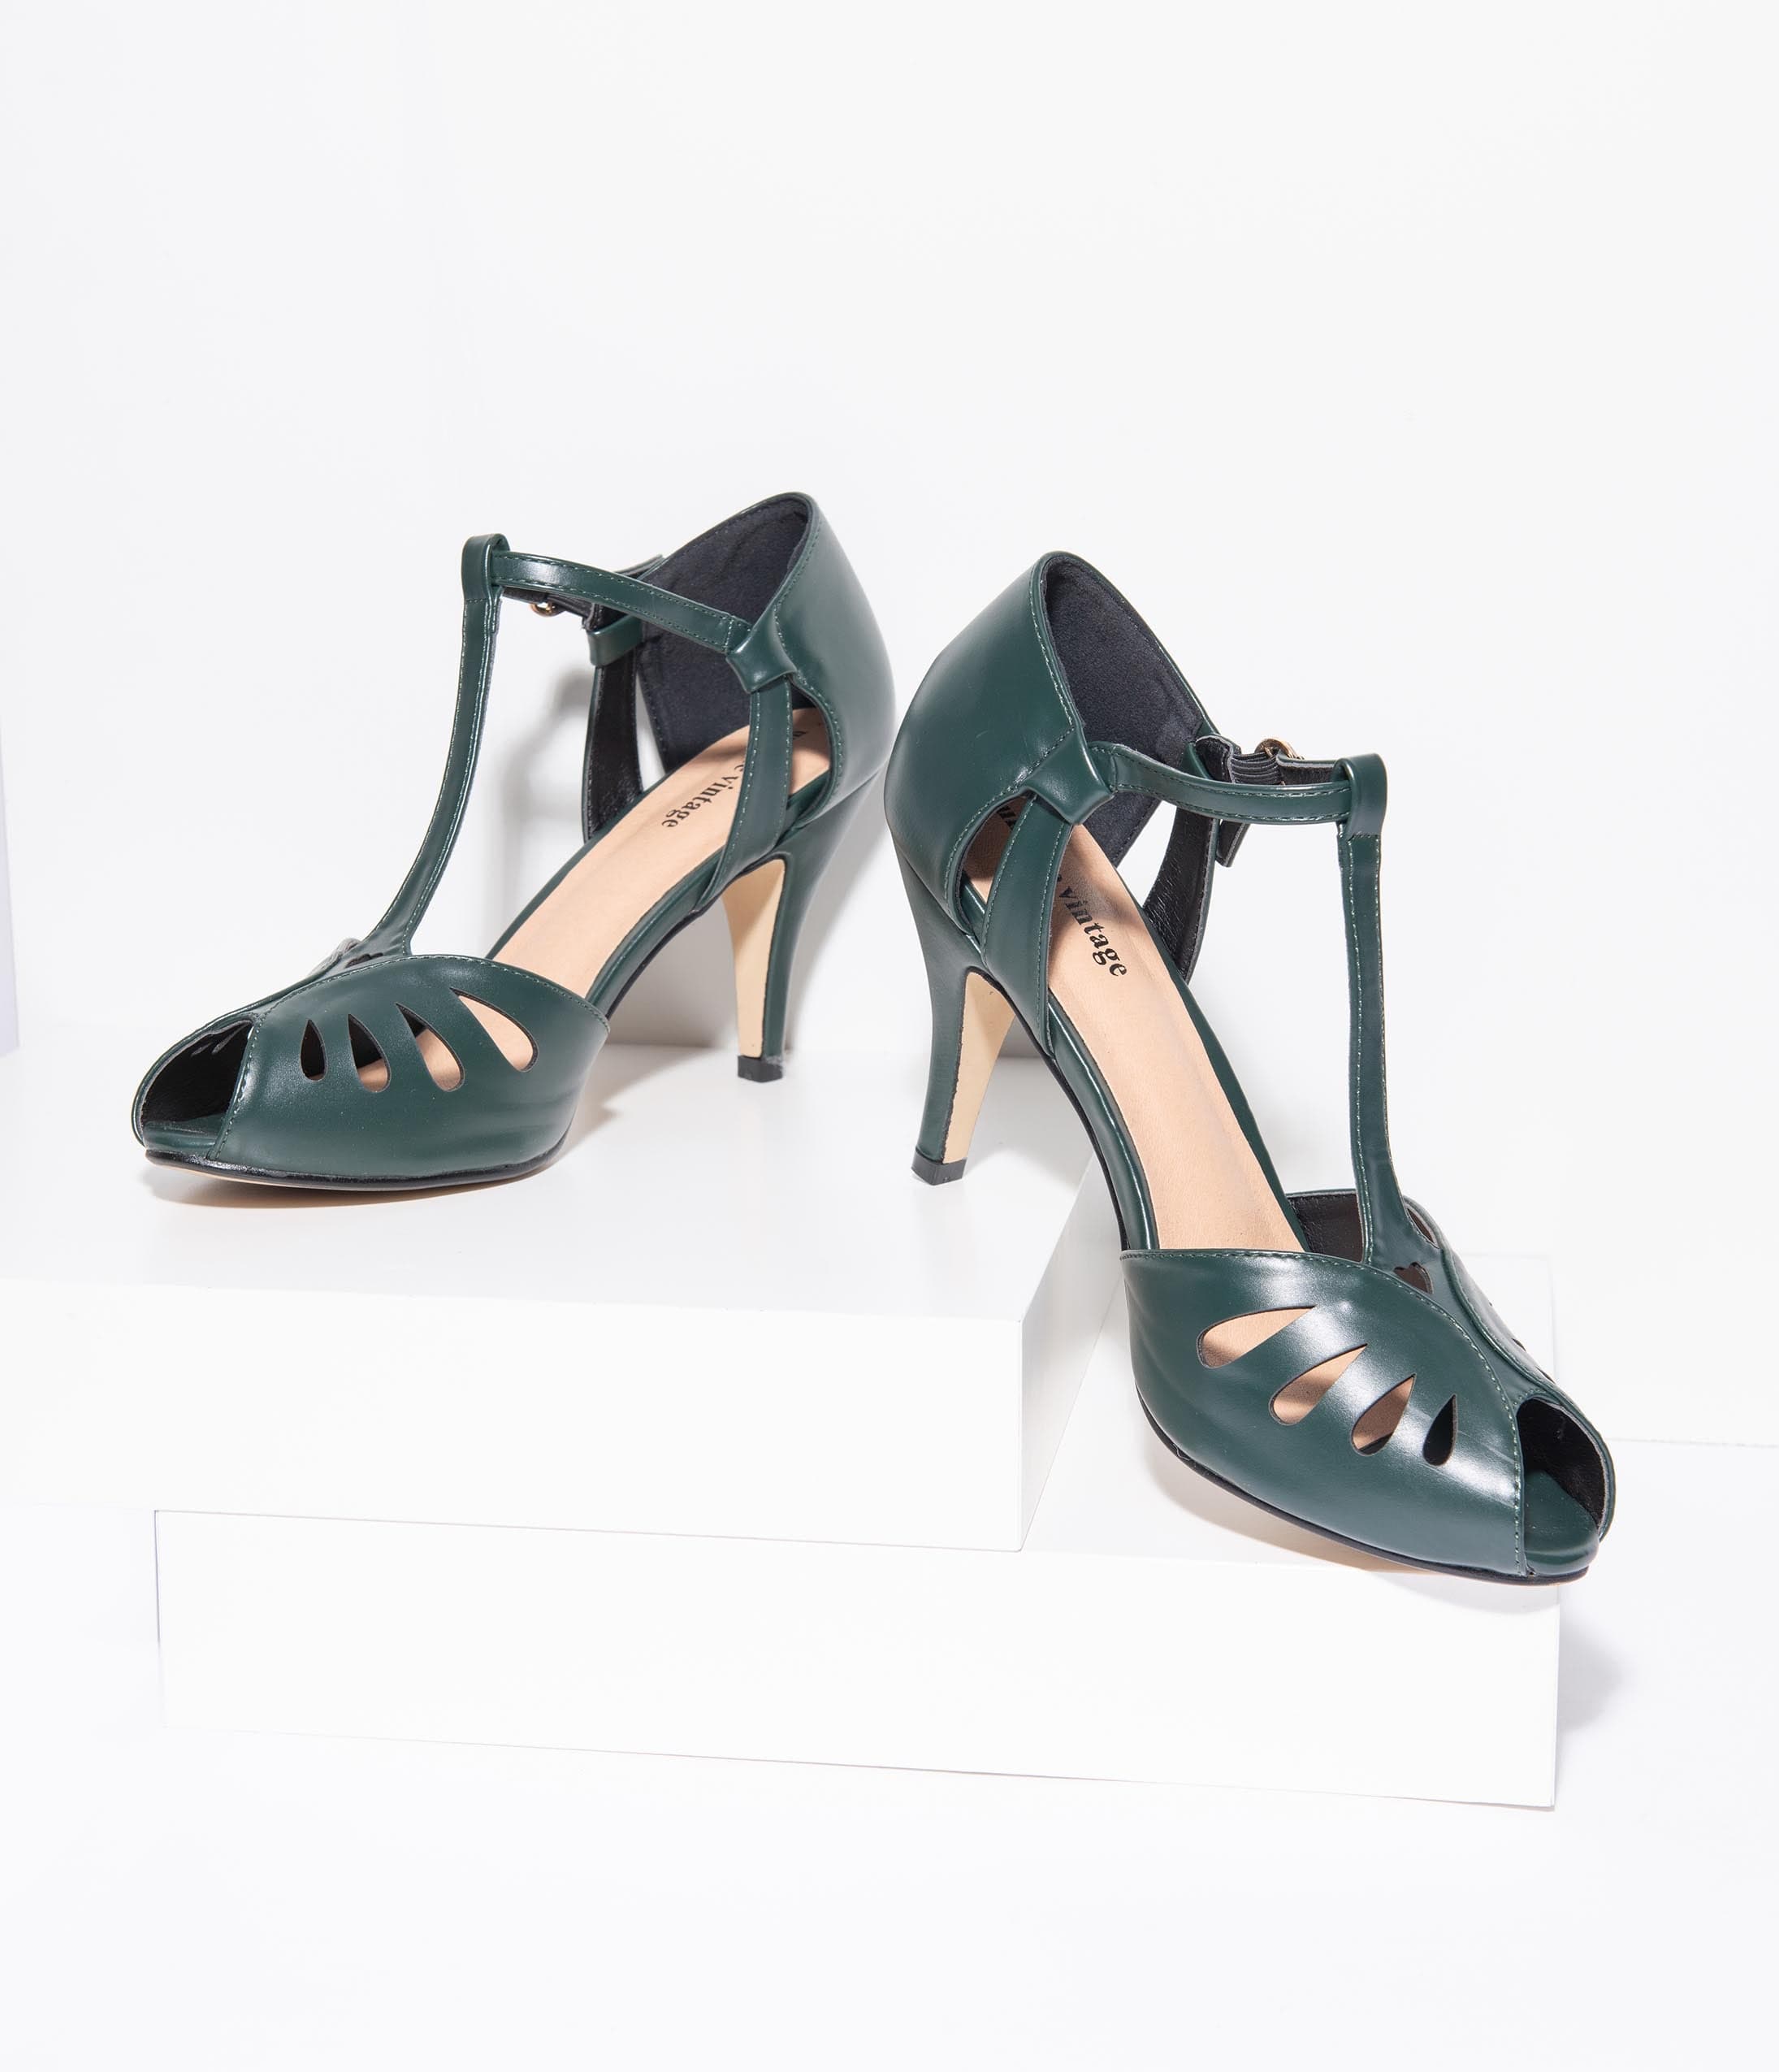 vintage style peep toe heels